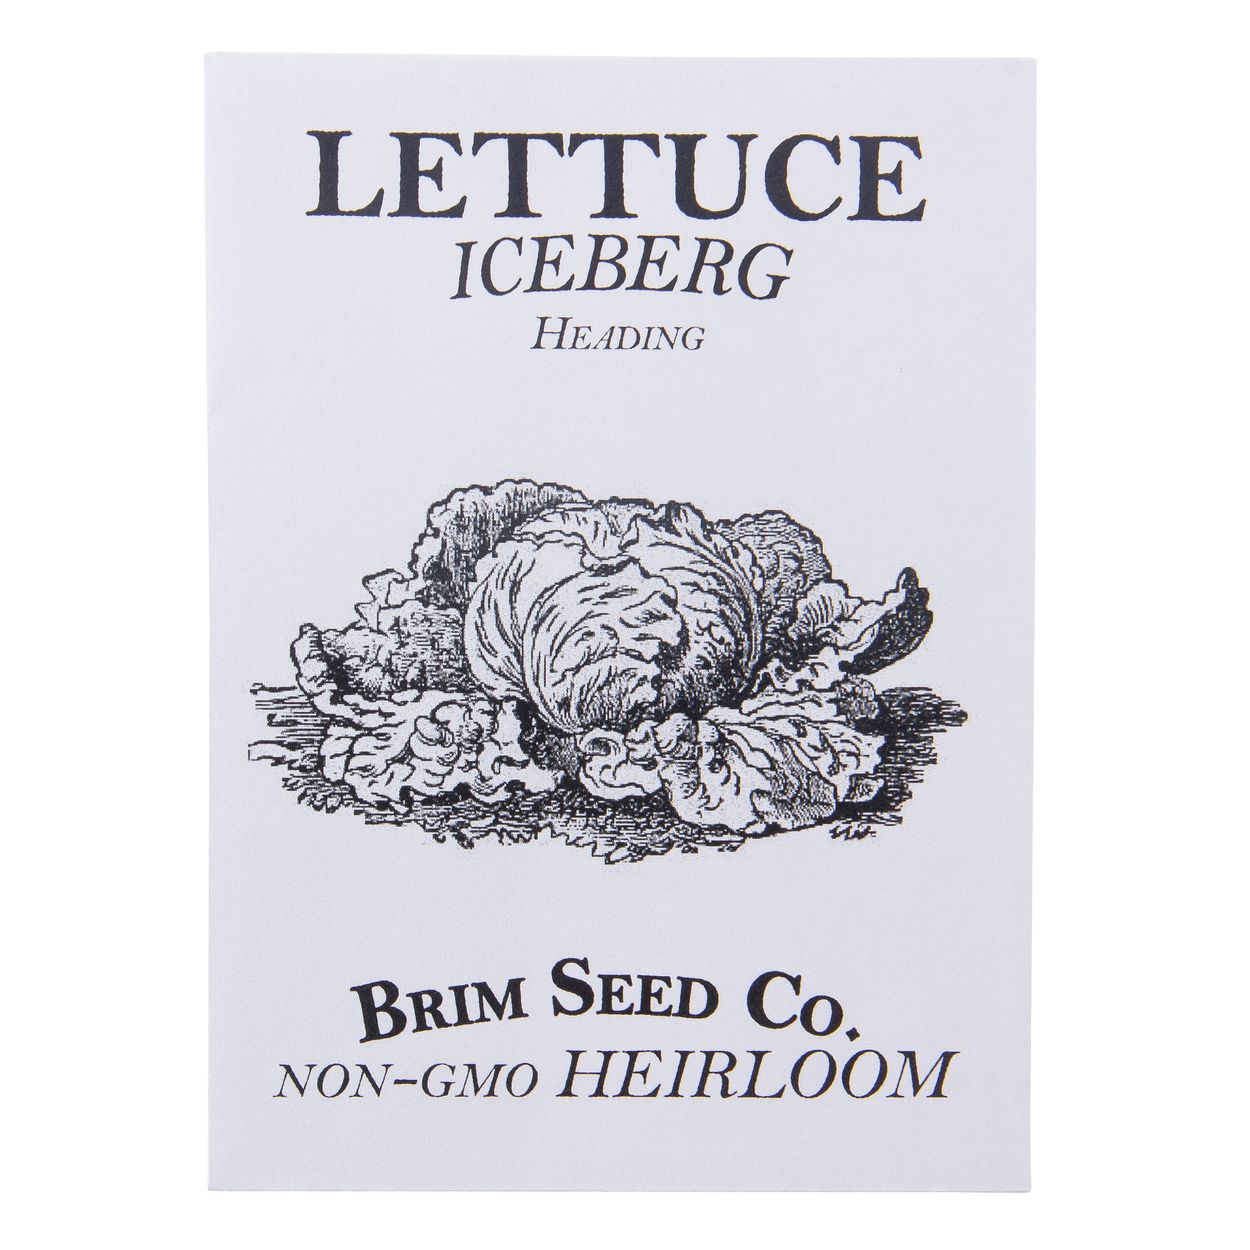 Brim Seed Co. - Heading Iceburg Lettuce Greens Heirloom Seed